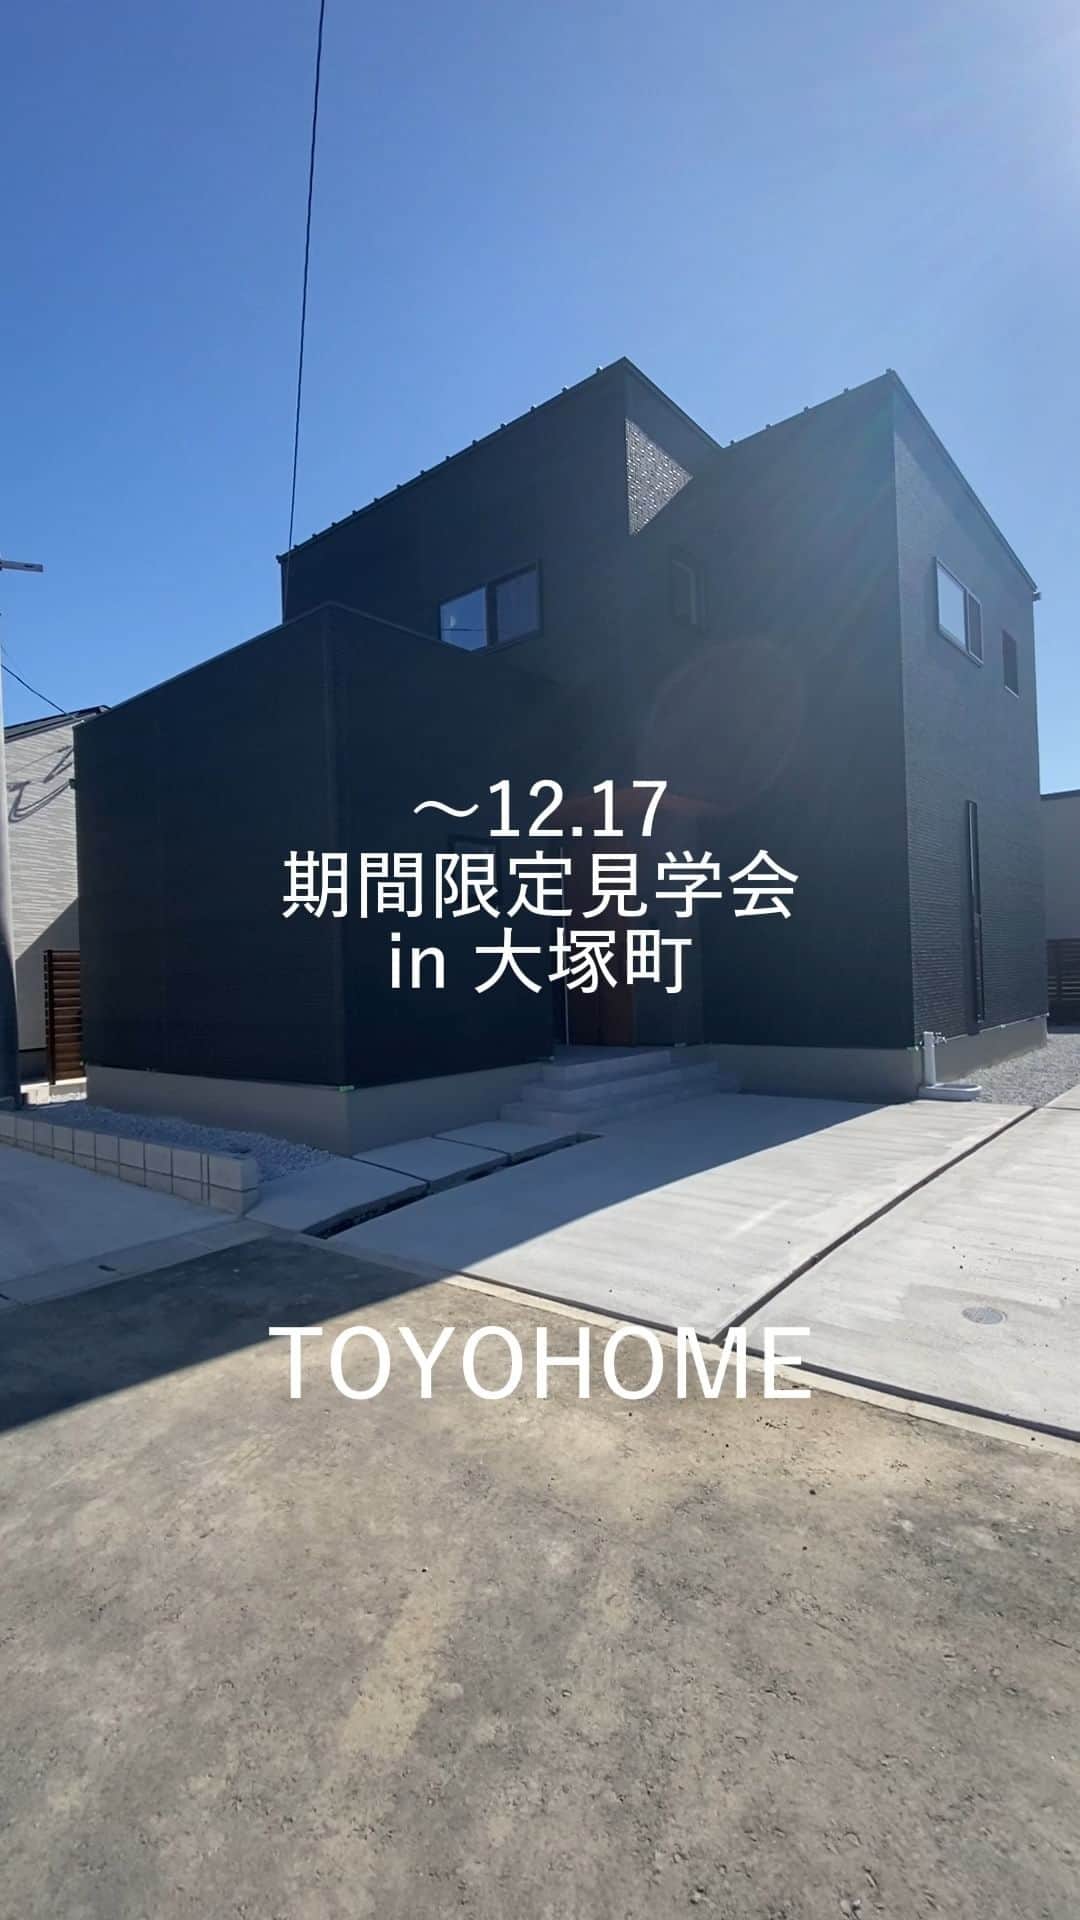 東洋ホームのインスタグラム：「@toyohome_miyazaki  東洋ホームの大塚町分譲地に新しいモデルハウスが完成します！  「おしゃれで落ち着くおうちカフェの家」  落ち着いたトーンでコーディネートされたインテリアに注目😍 高性能ZEH住宅です。  11/11オープン！12/17までに期間限定公開です。 お見逃しなく！  *  ———————————————  東洋ホームは地元宮崎で40年間家づくりを続けてきた会社です。 「家づくり」から、「暮らしづくり」へ。 こだわりの間取りとデザインが一体となった、暮らしやすく心地よい居場所のある【あなただけの住まい】を実現✨ 私たちはオシャレにも工法にもこだわった「お家の専門家」です💪  ———————————————  ＼東洋ホーム 公式YouTube始めました／ YouTubeにて【東洋ホーム】と検索！ 人気の平屋ルームツアーは必見！ 気軽にみられるショート動画も多数投稿中◎  ——————————————— ↓施工事例＆最新情報はHPにて↓ @toyohome_miyazaki プロフィールのリンクよりチェック🌟 お問合せや資料請求もお待ちしております📥 ———————————————  #東洋ホーム #宮崎工務店 #toyohome #東洋ホーム宮崎 #注文住宅 #マイホーム #マイホーム計画中 #施工事例 #宮崎注文住宅 #おしゃれな家 #おしゃれな家づくり」